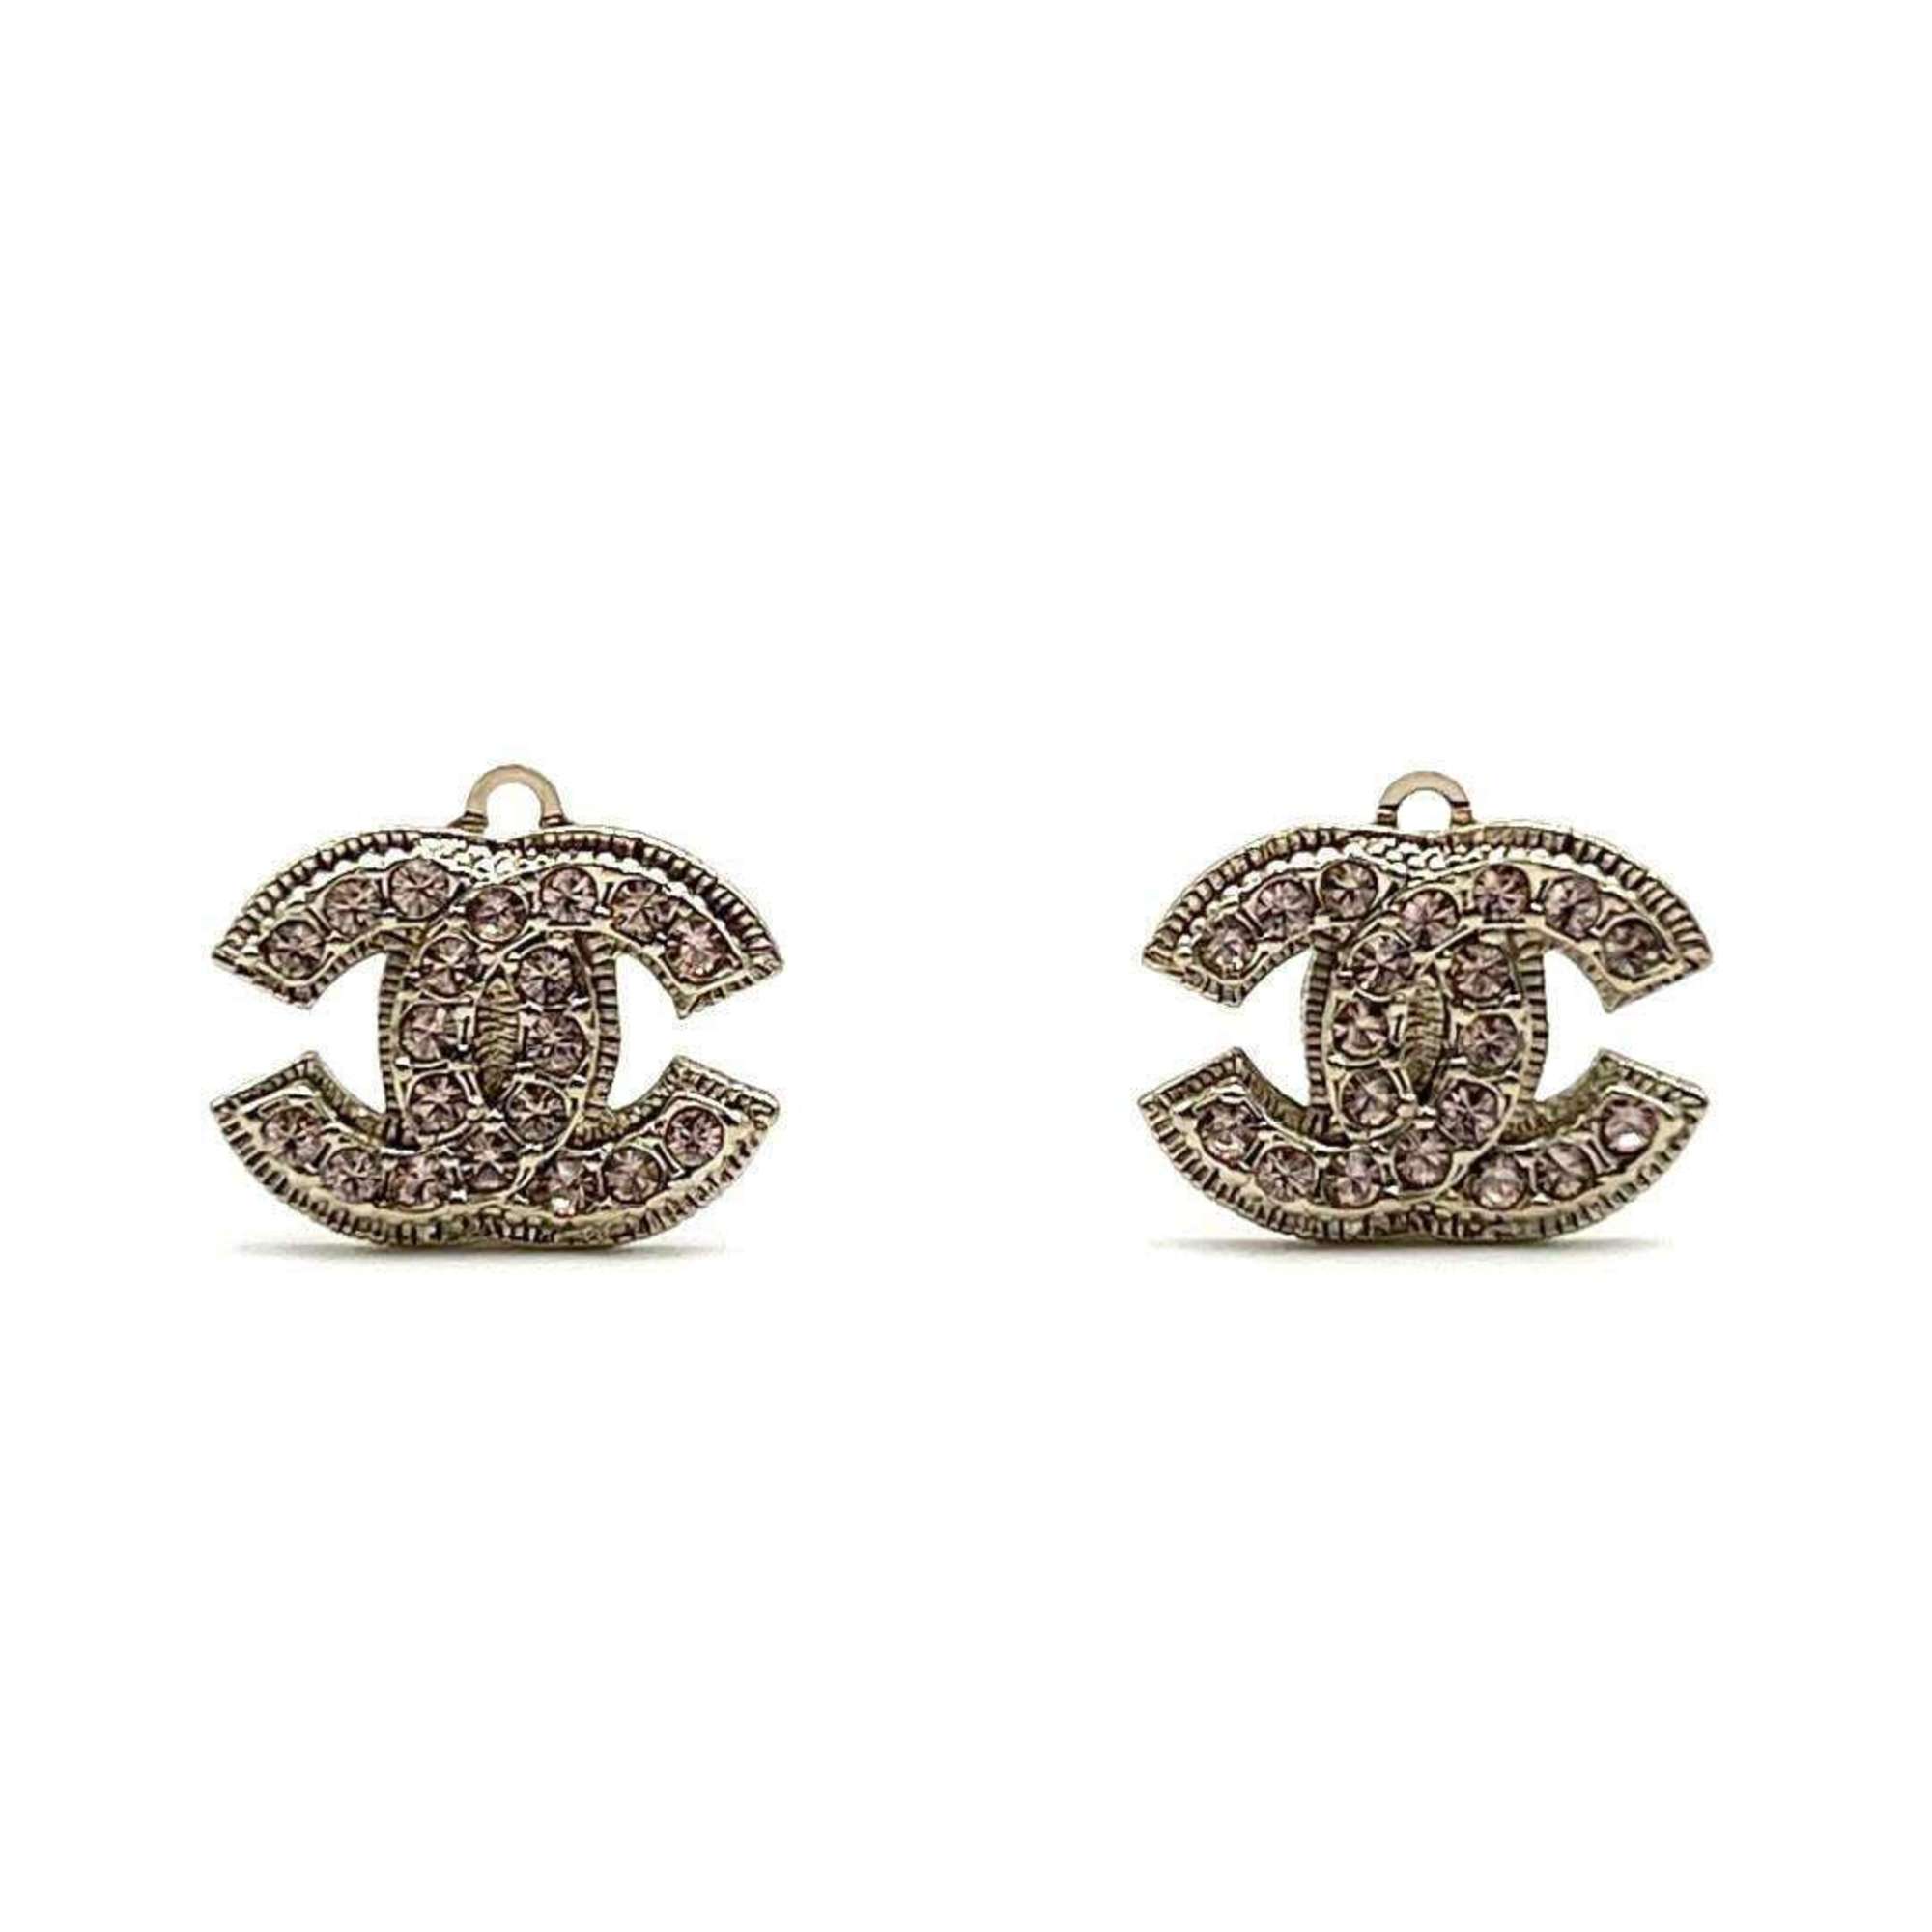 Chanel Women's Earrings, Coco Mark, CHANEL, Gold, Pink Rhinestone